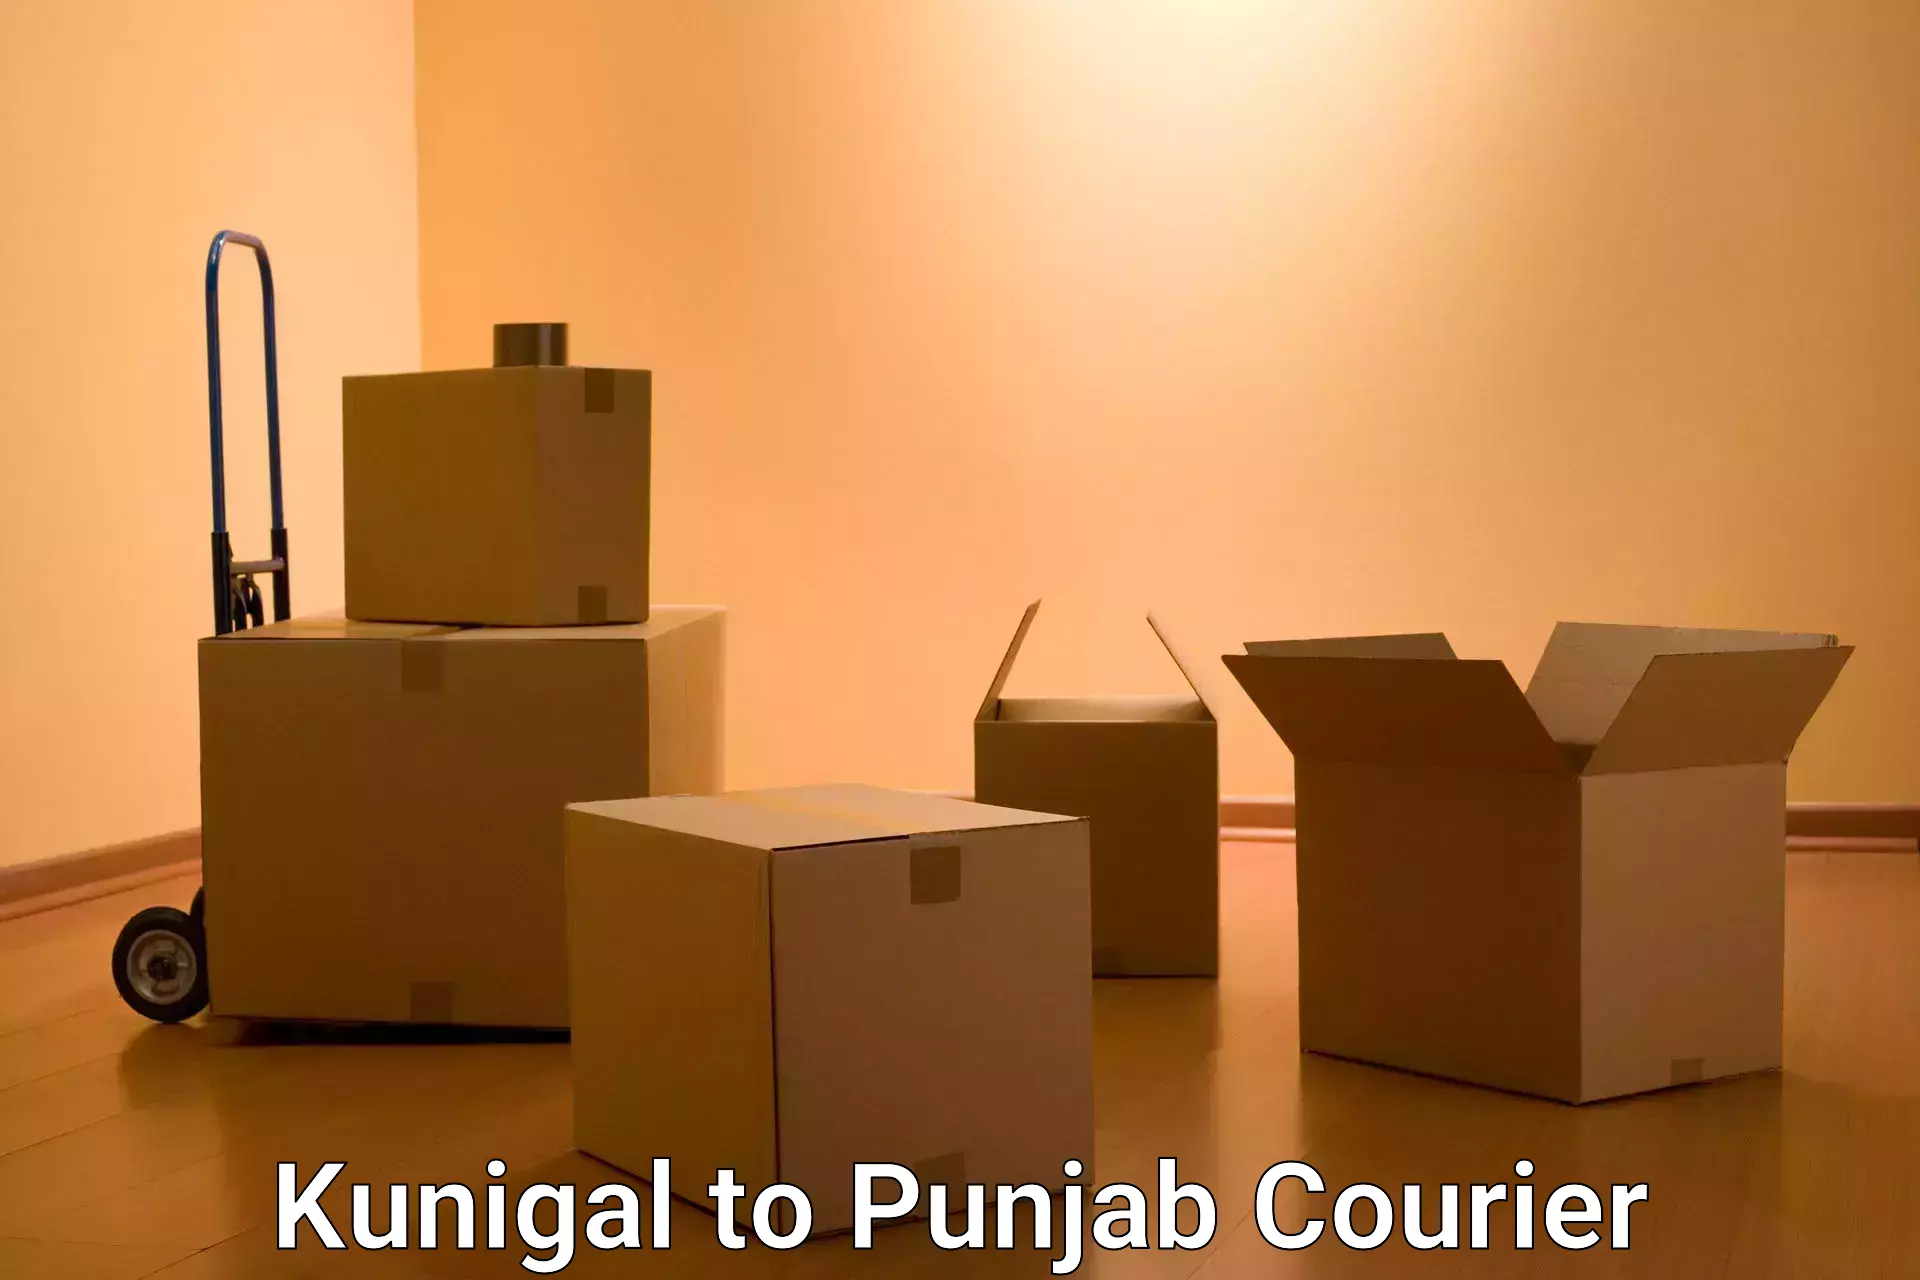 International parcel service Kunigal to Jalandhar